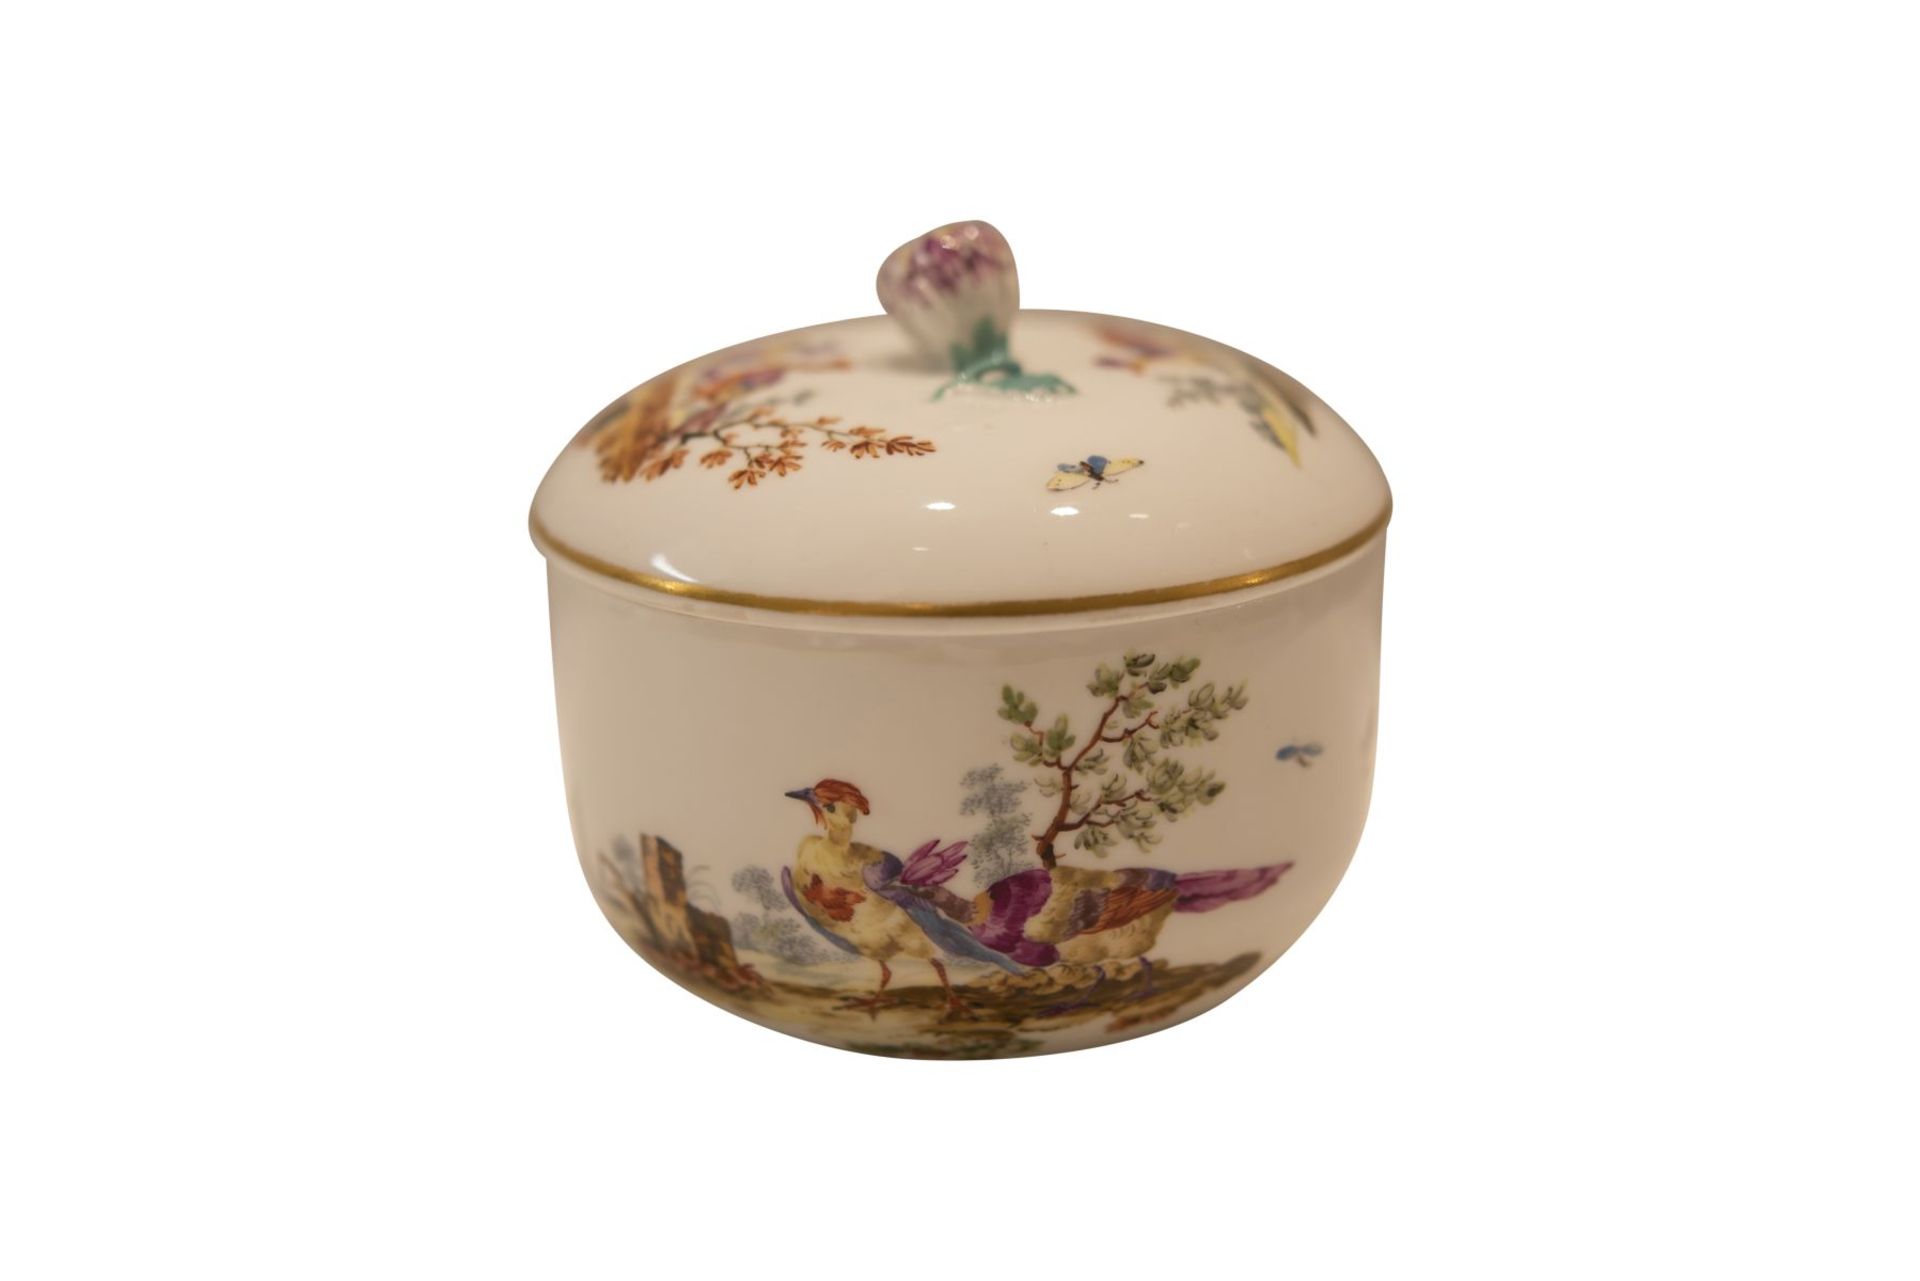 9 piece porcelain service Meissen around 1763 - Image 8 of 12